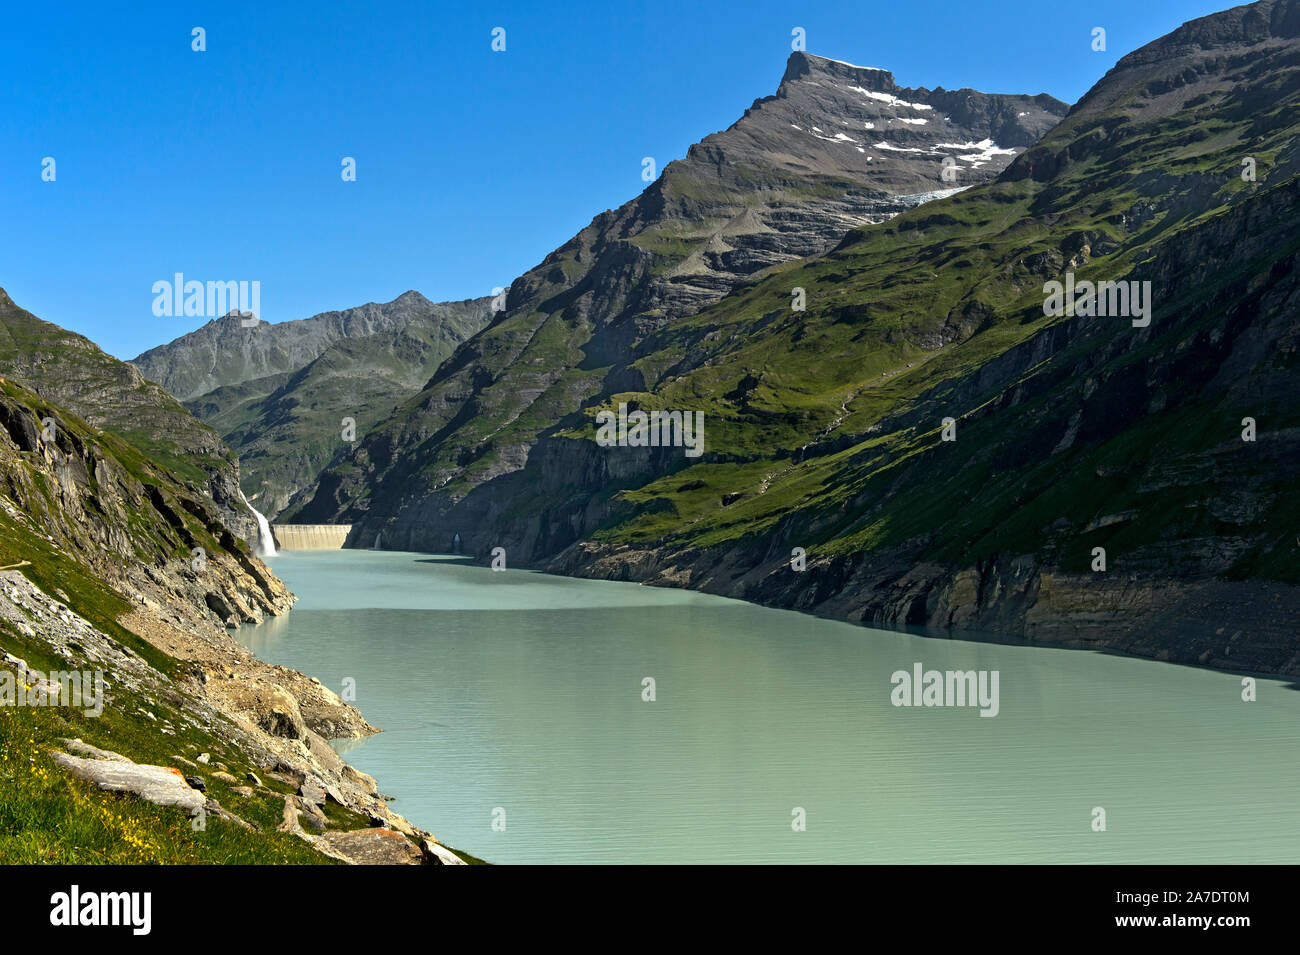 Mauvoisin water reservoir, Lac de Mauvoisin, Val de Bagnes, Valais, Switzerland Stock Photo